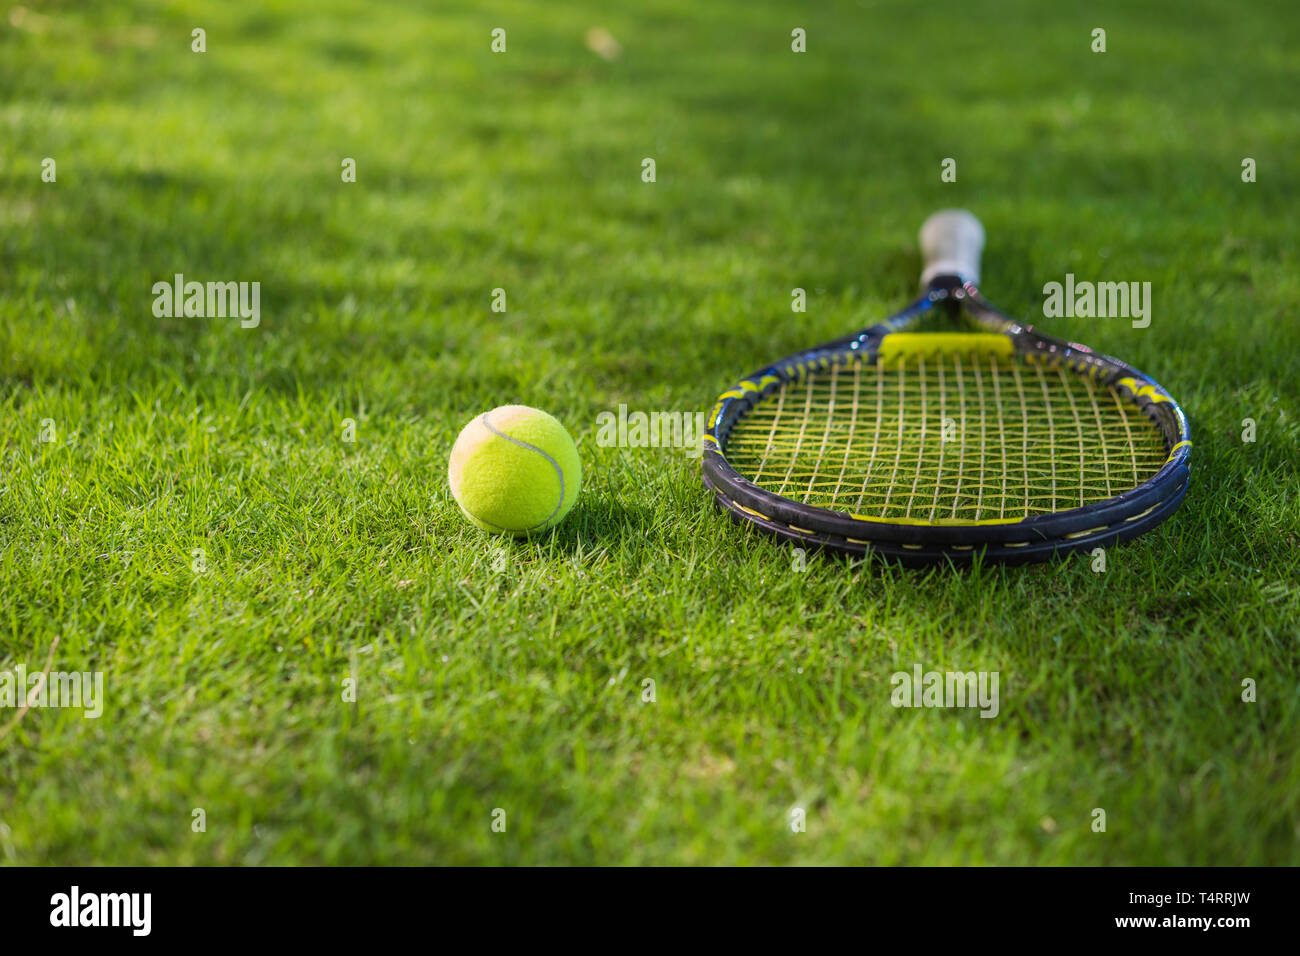 Tennis ball mit Schläger auf nassem Gras nach regen Stockfotografie - Alamy